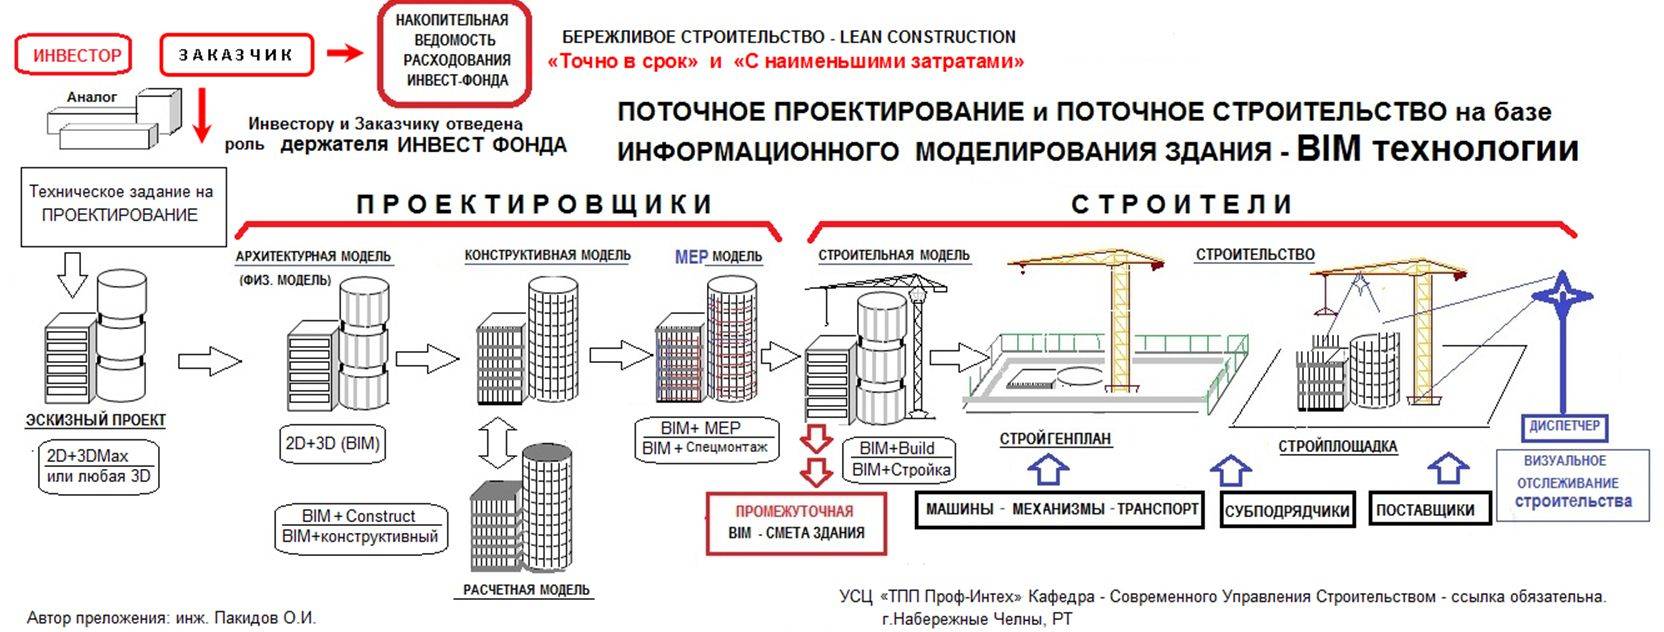 Основным проектом документа при рассмотрении плана сооружения объекта является